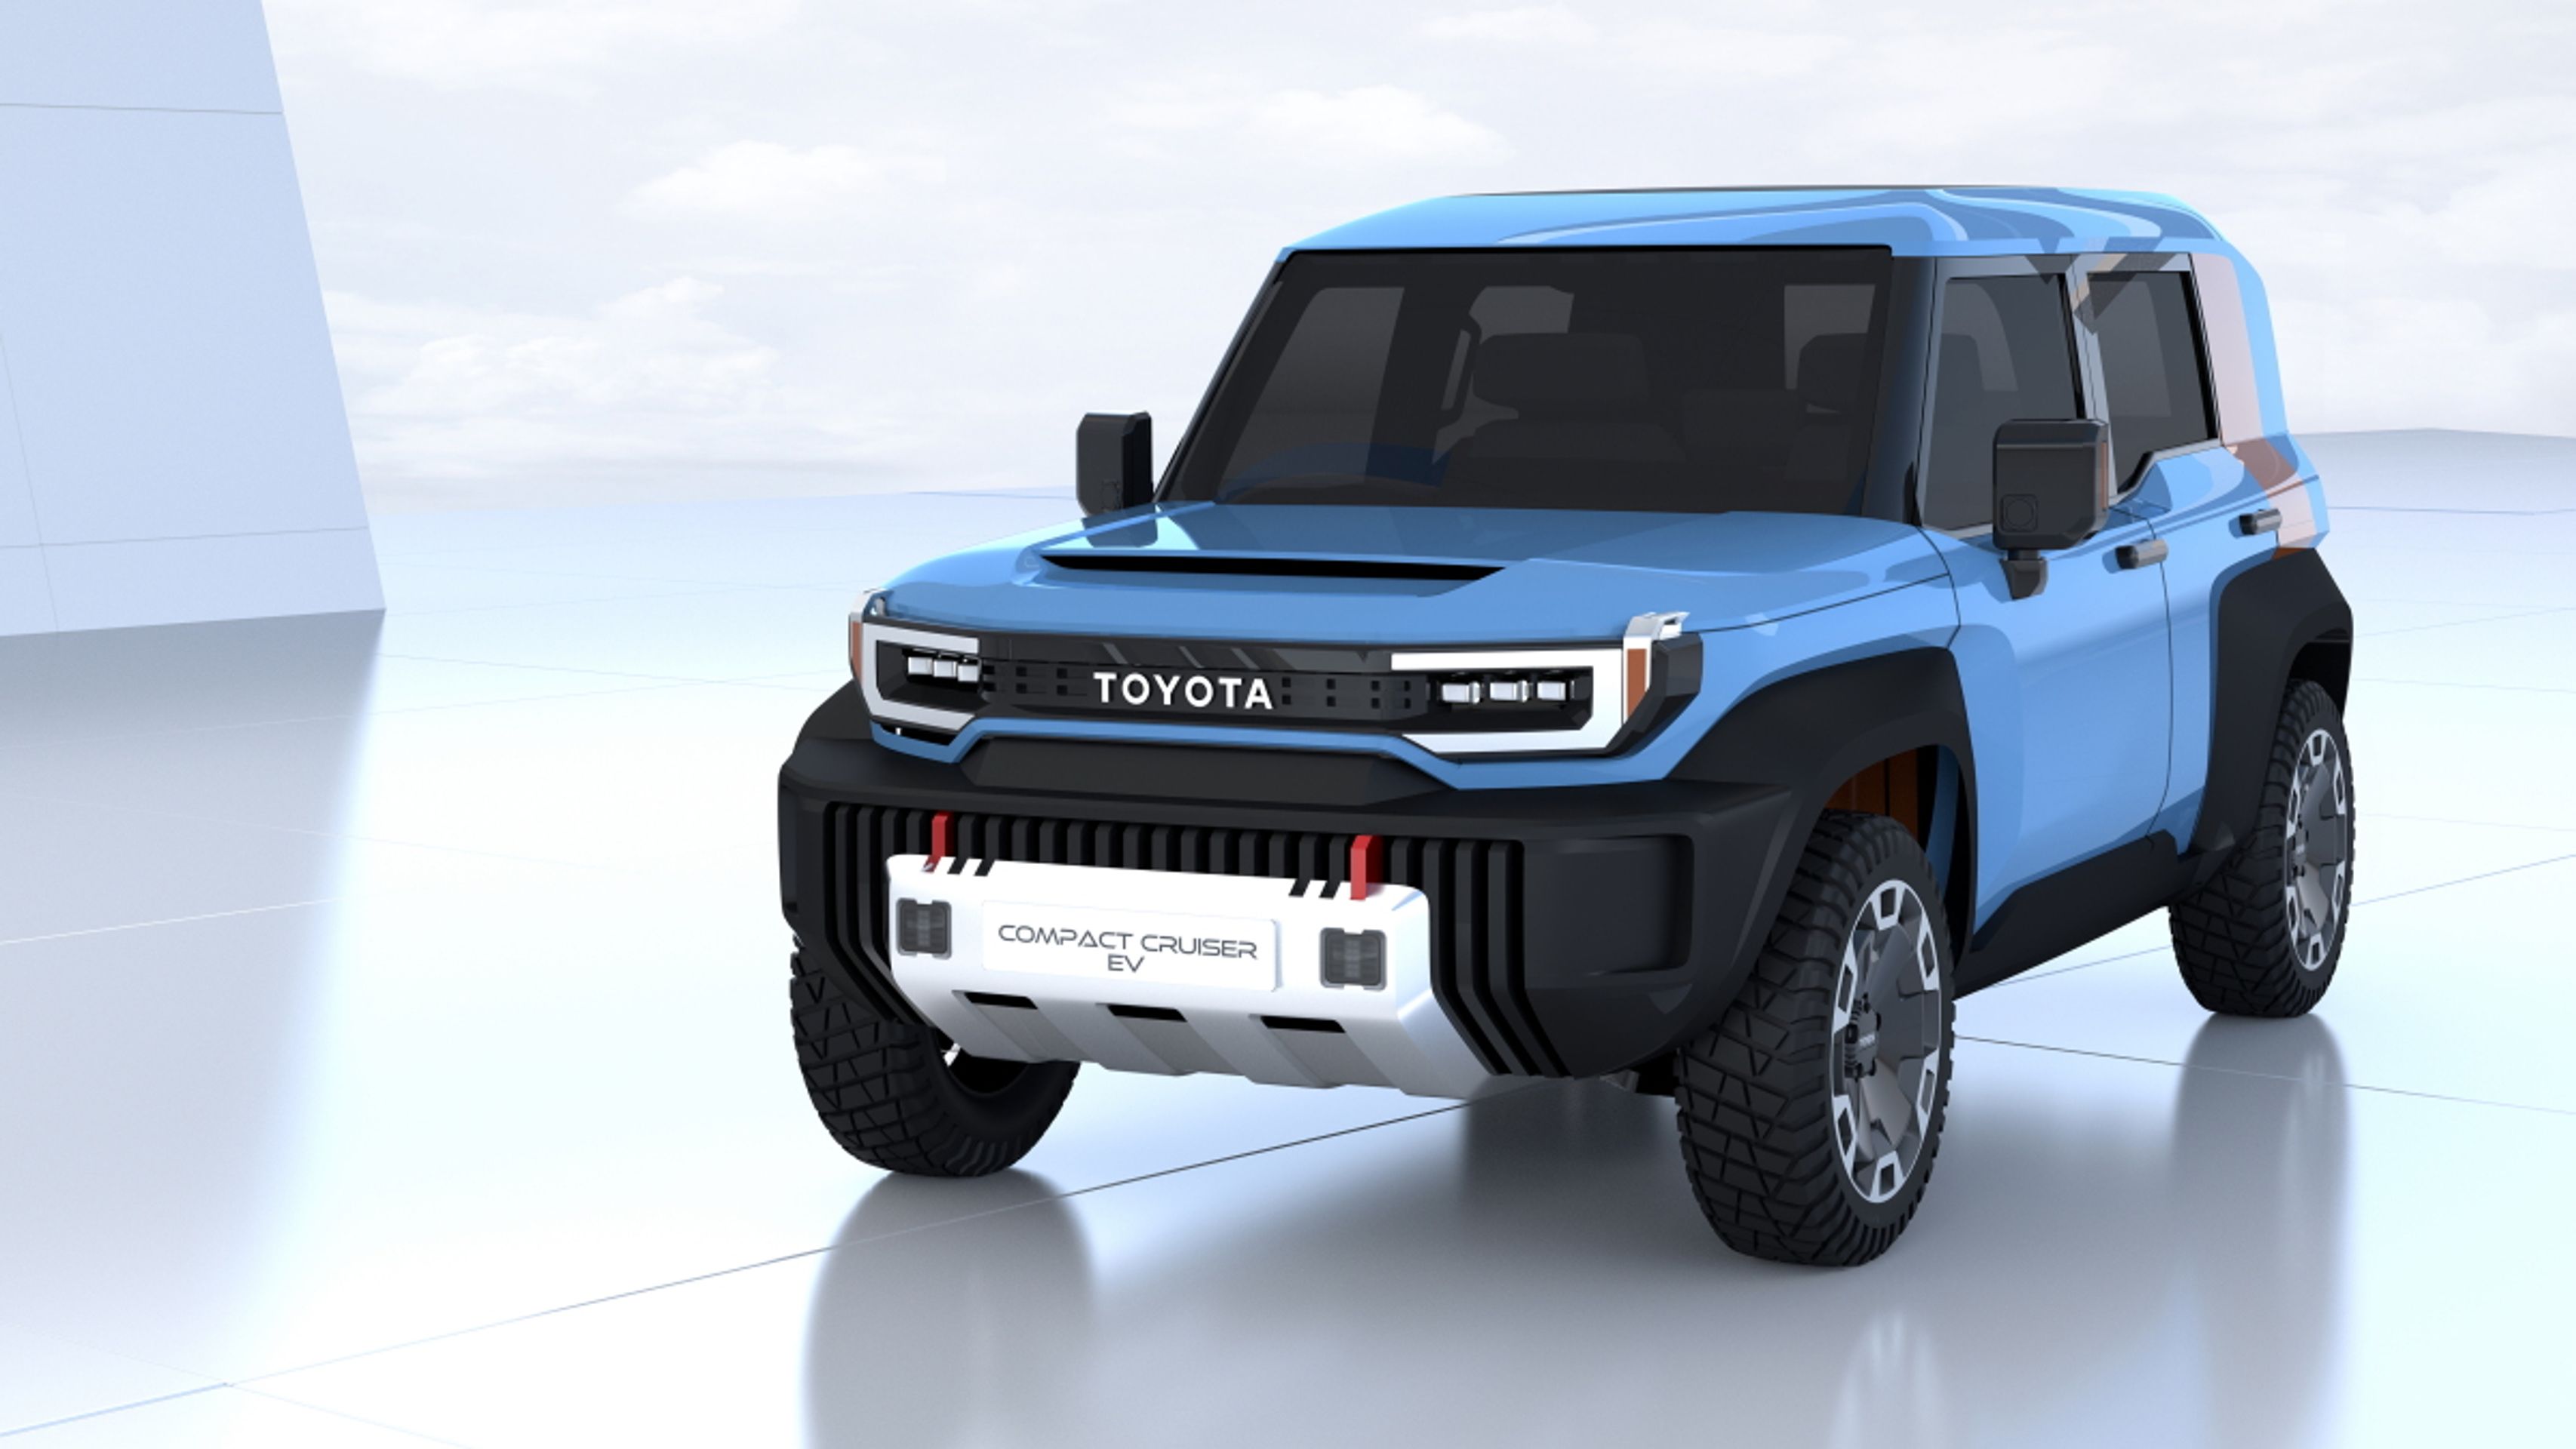 Budoucí bateriové vozy značek Toyota a Lexus - Takhle vypadá bateriová budoucnost podle značek Toyota a Lexus (11/23)